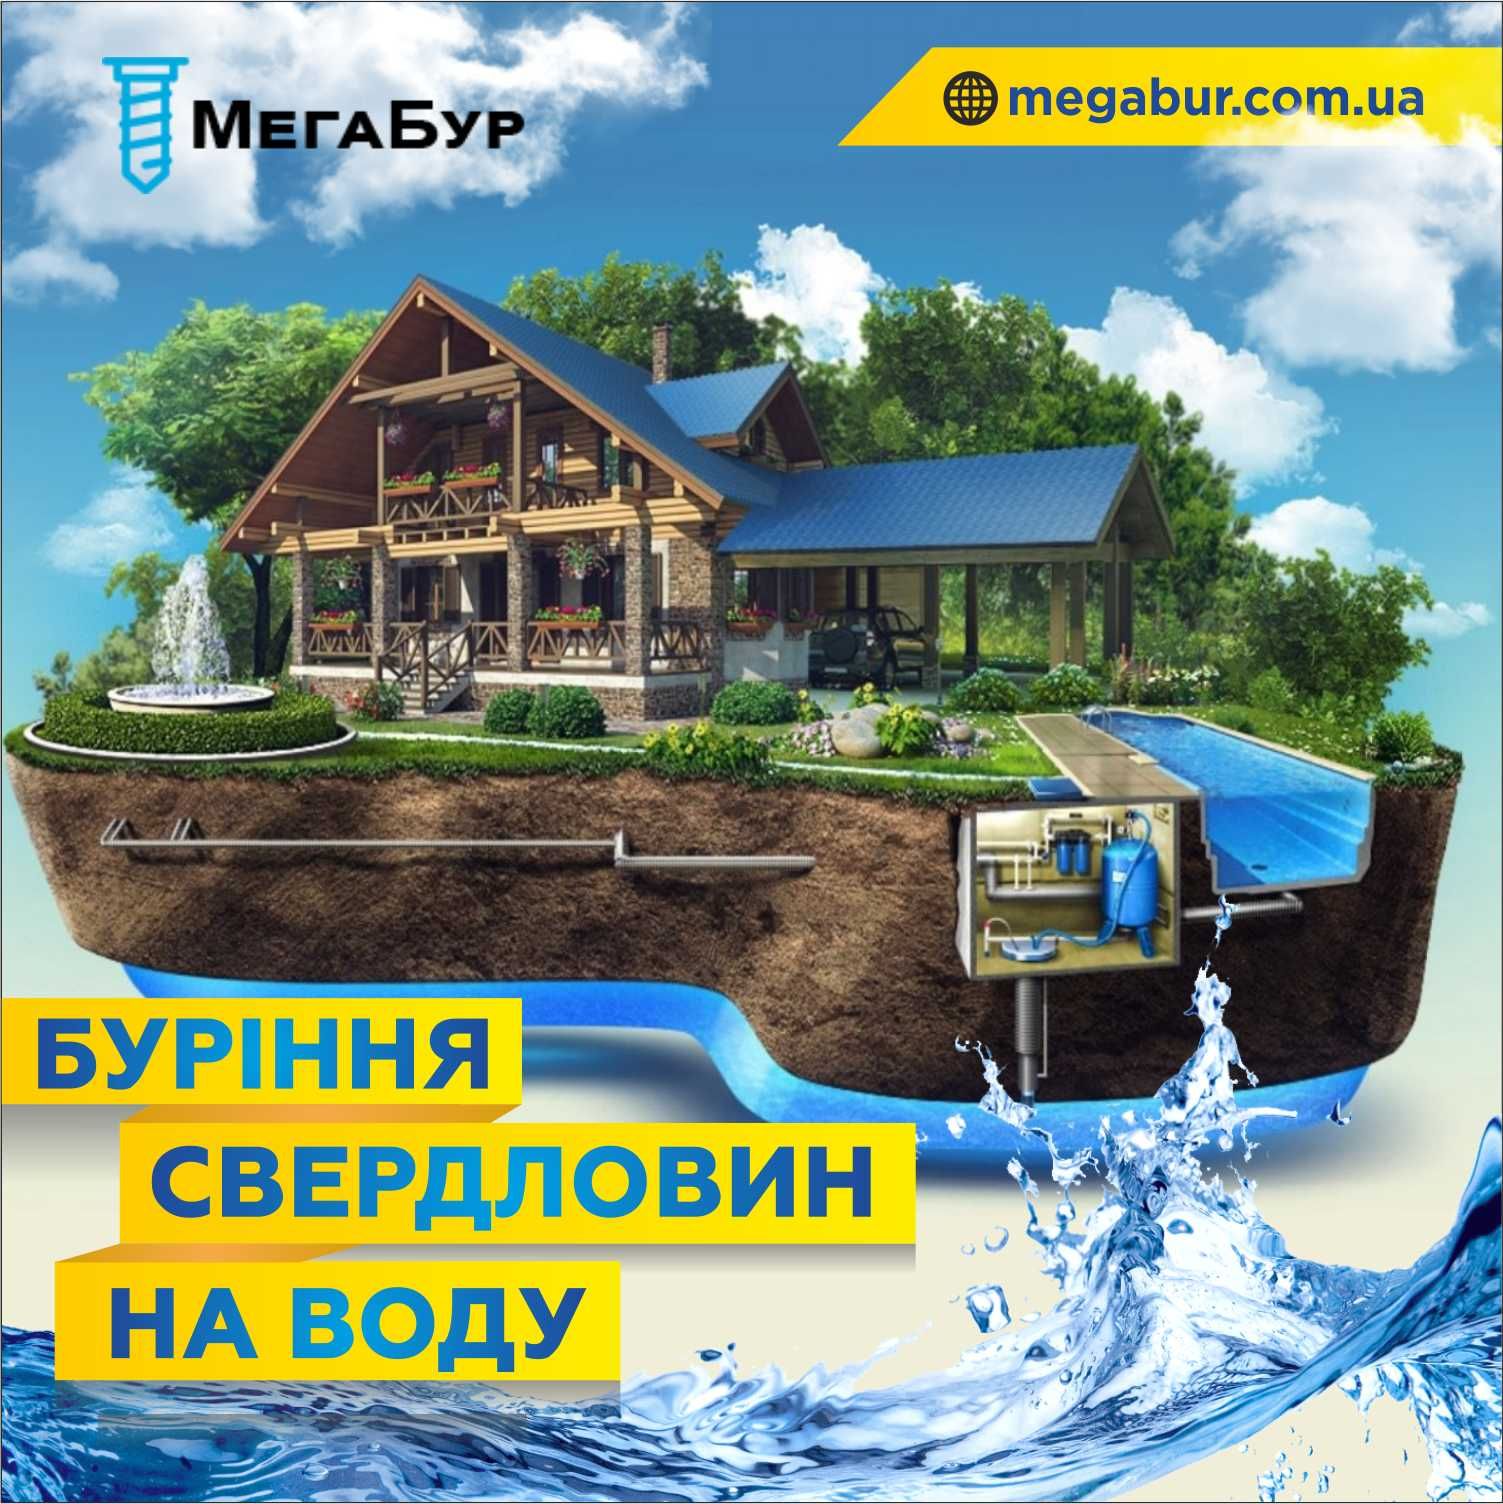 Цена  Бурение скважины (Буріння свердловин) на воду под ключ Ульяновка